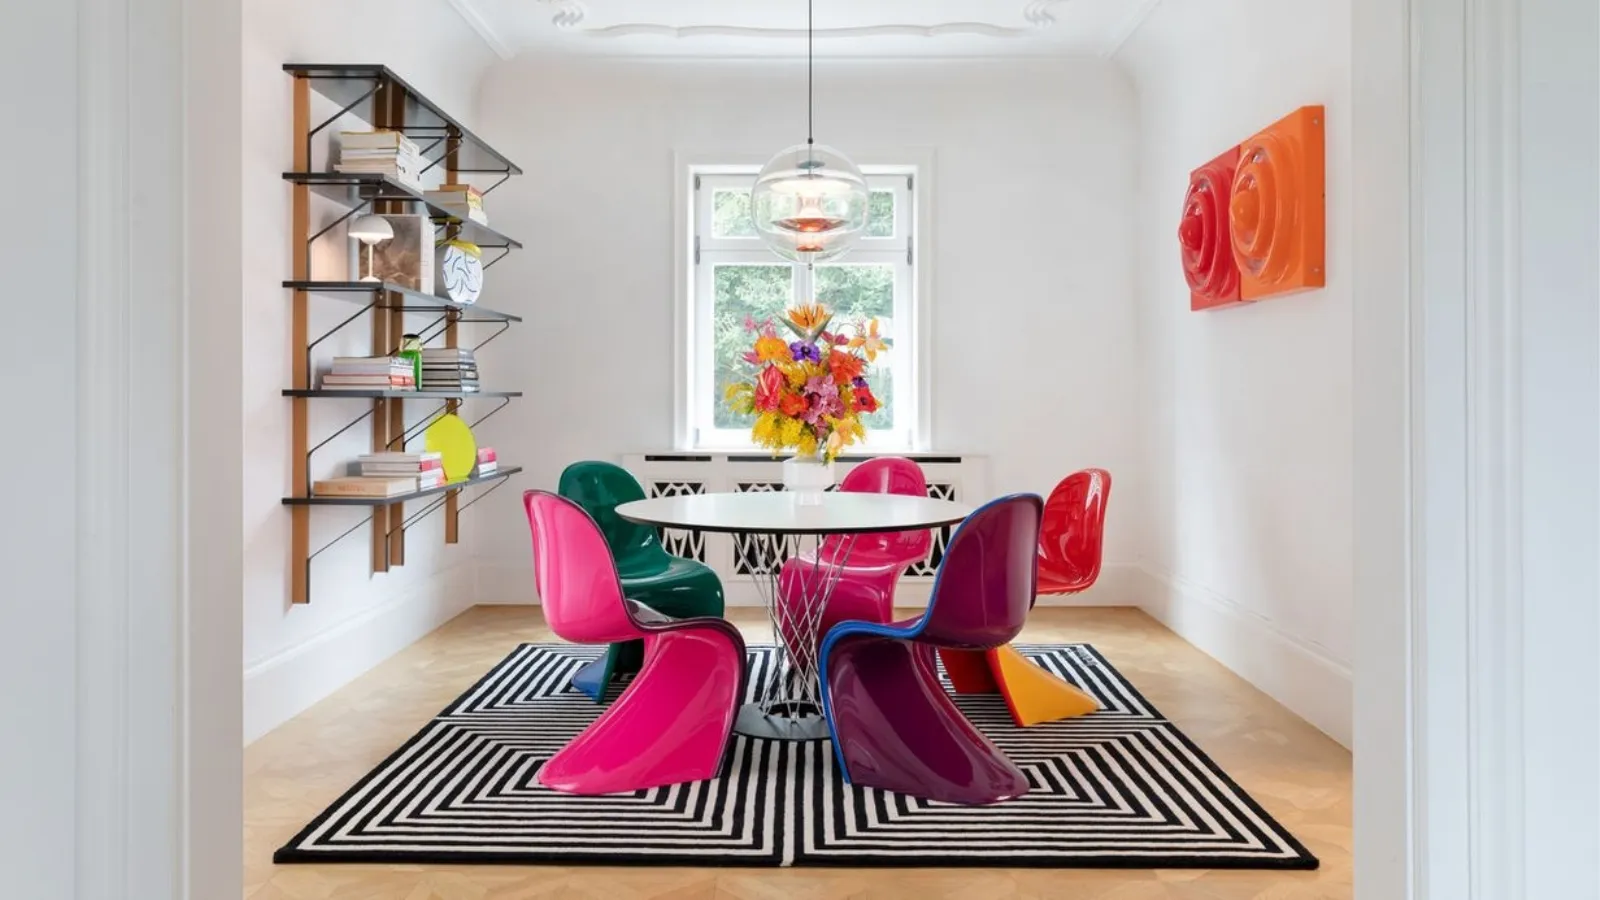 Sedia di design in plastica colorata in laccato lucido Panton Chair Duo di Vitra